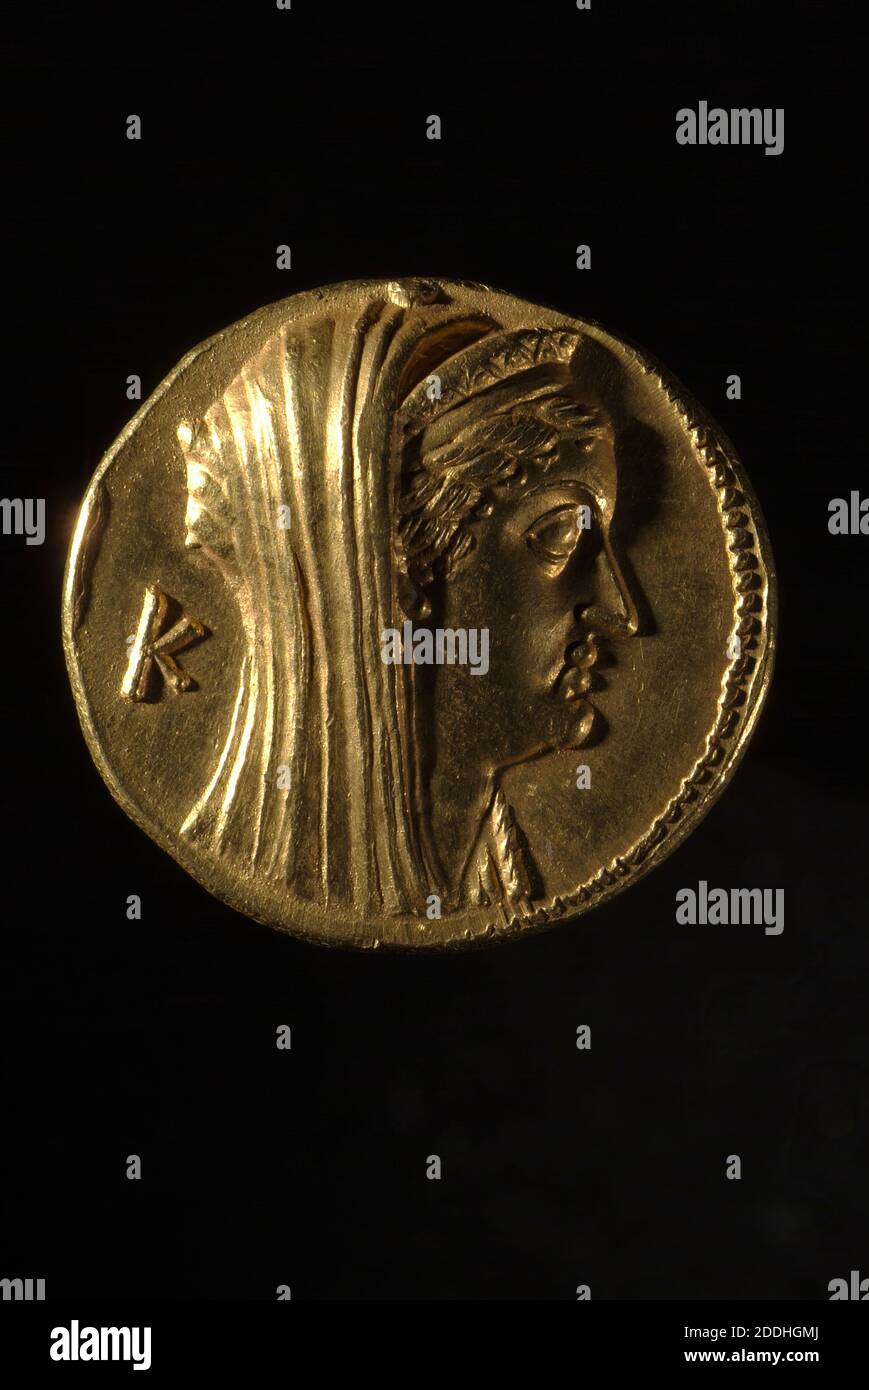 Vue inversée Oktadrachm grec d'Arsinoe II, 240 BC pièce d'or, métal précieux, Or, pièces anciennes et médiévales, Numismatique, Grèce antique, argent Banque D'Images